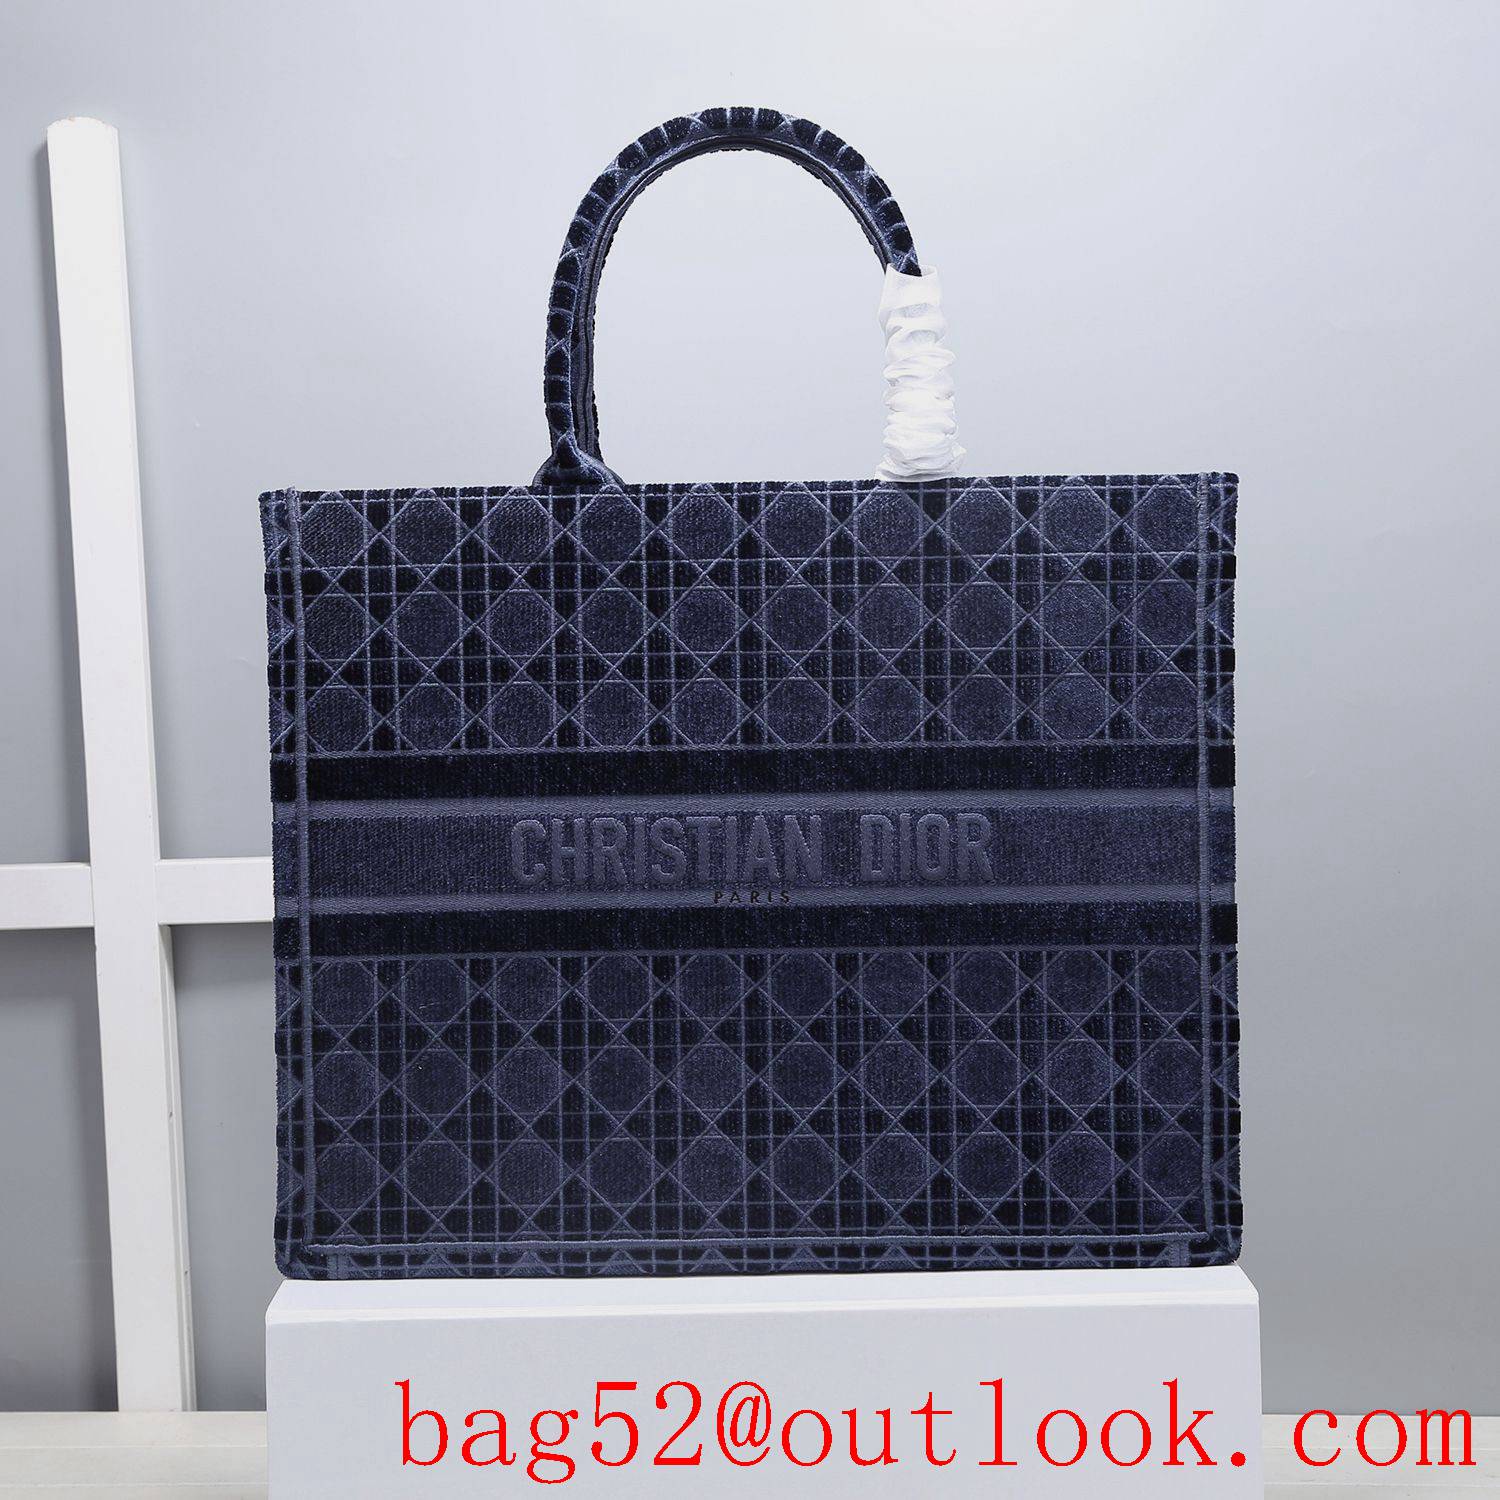 Dior velvet tote shopping navy blue handbag large bag